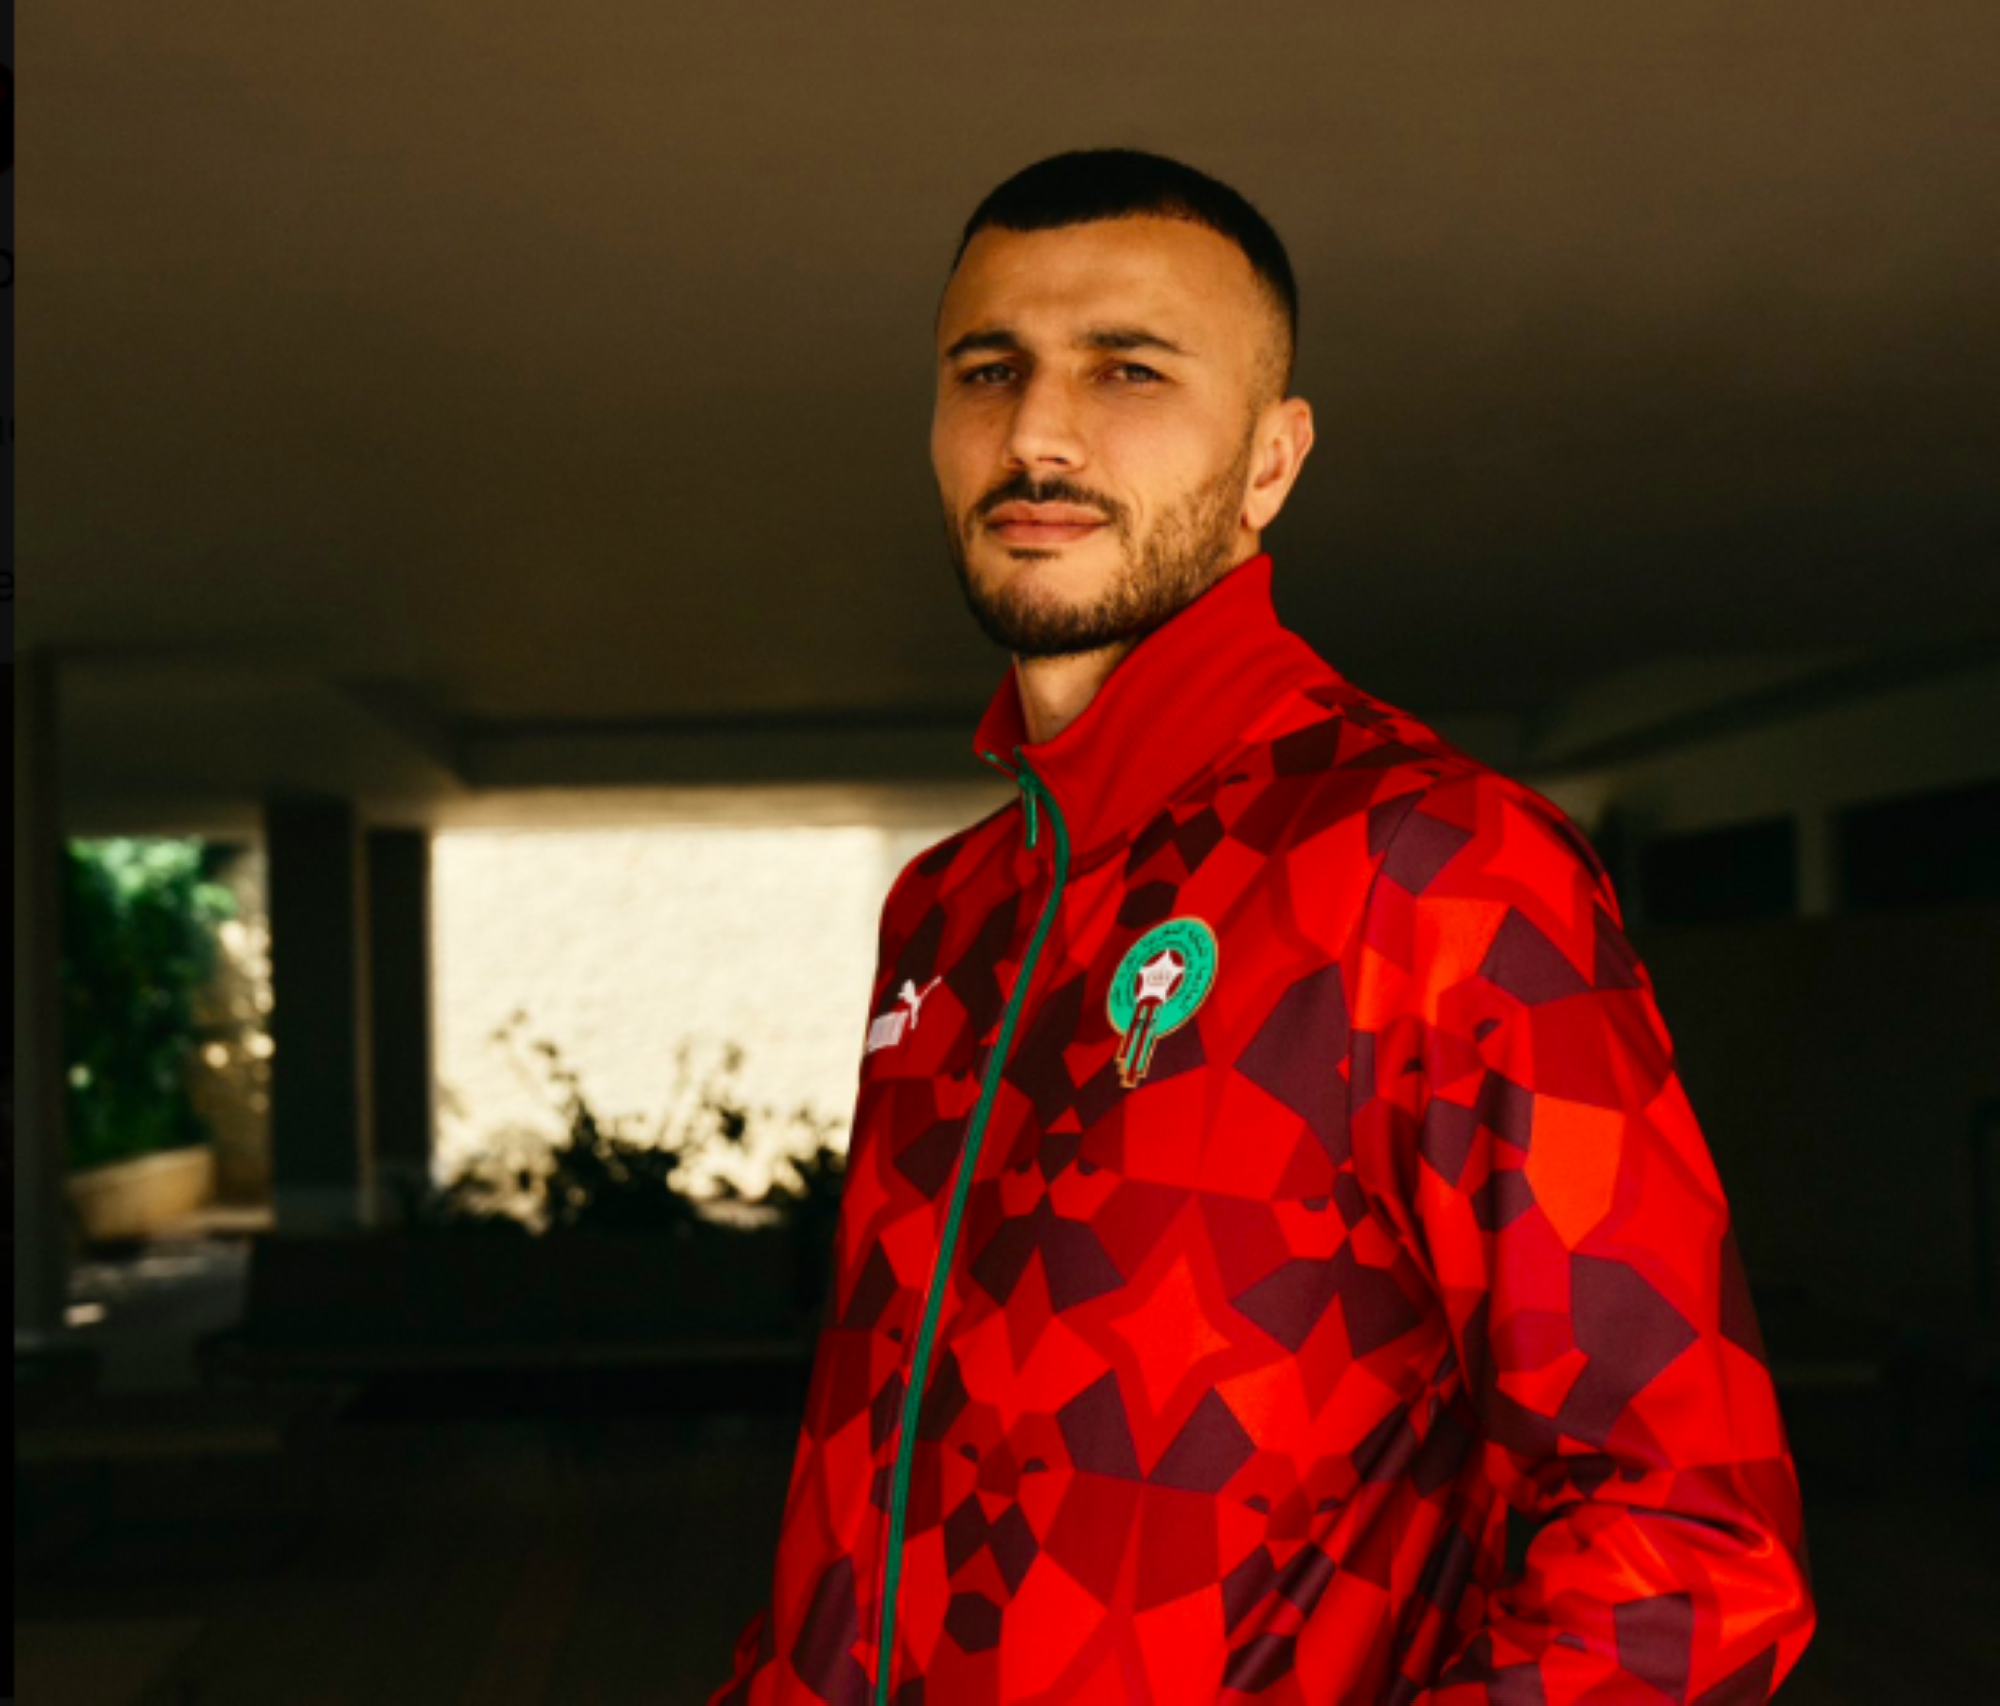 CAN 2023 : Puma dévoile la nouvelle collection du maillot du Maroc